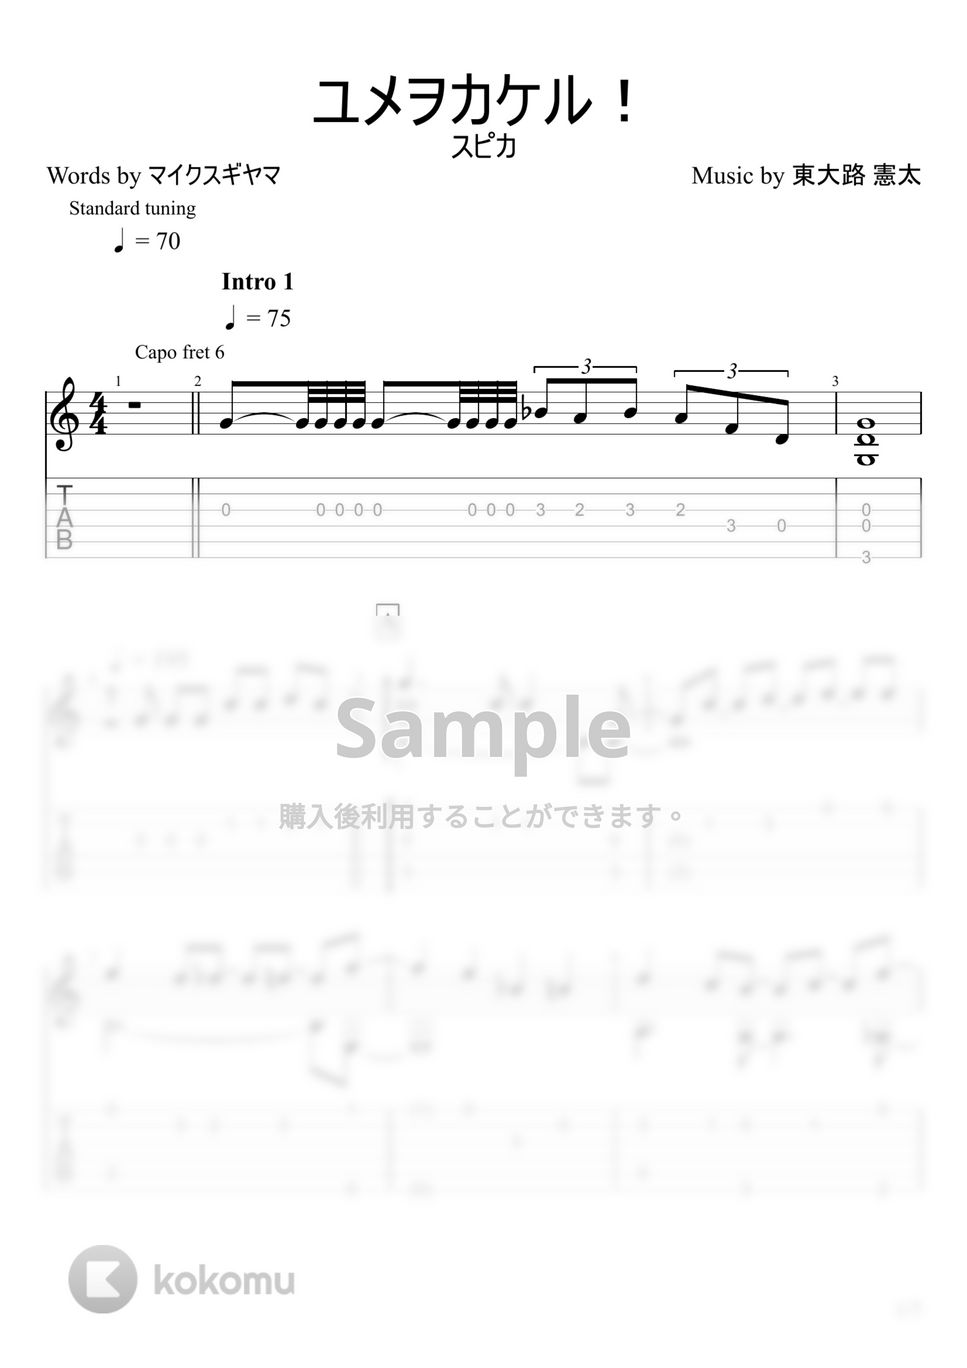 スピカ - ユメヲカケル！ (ソロギター) by u3danchou